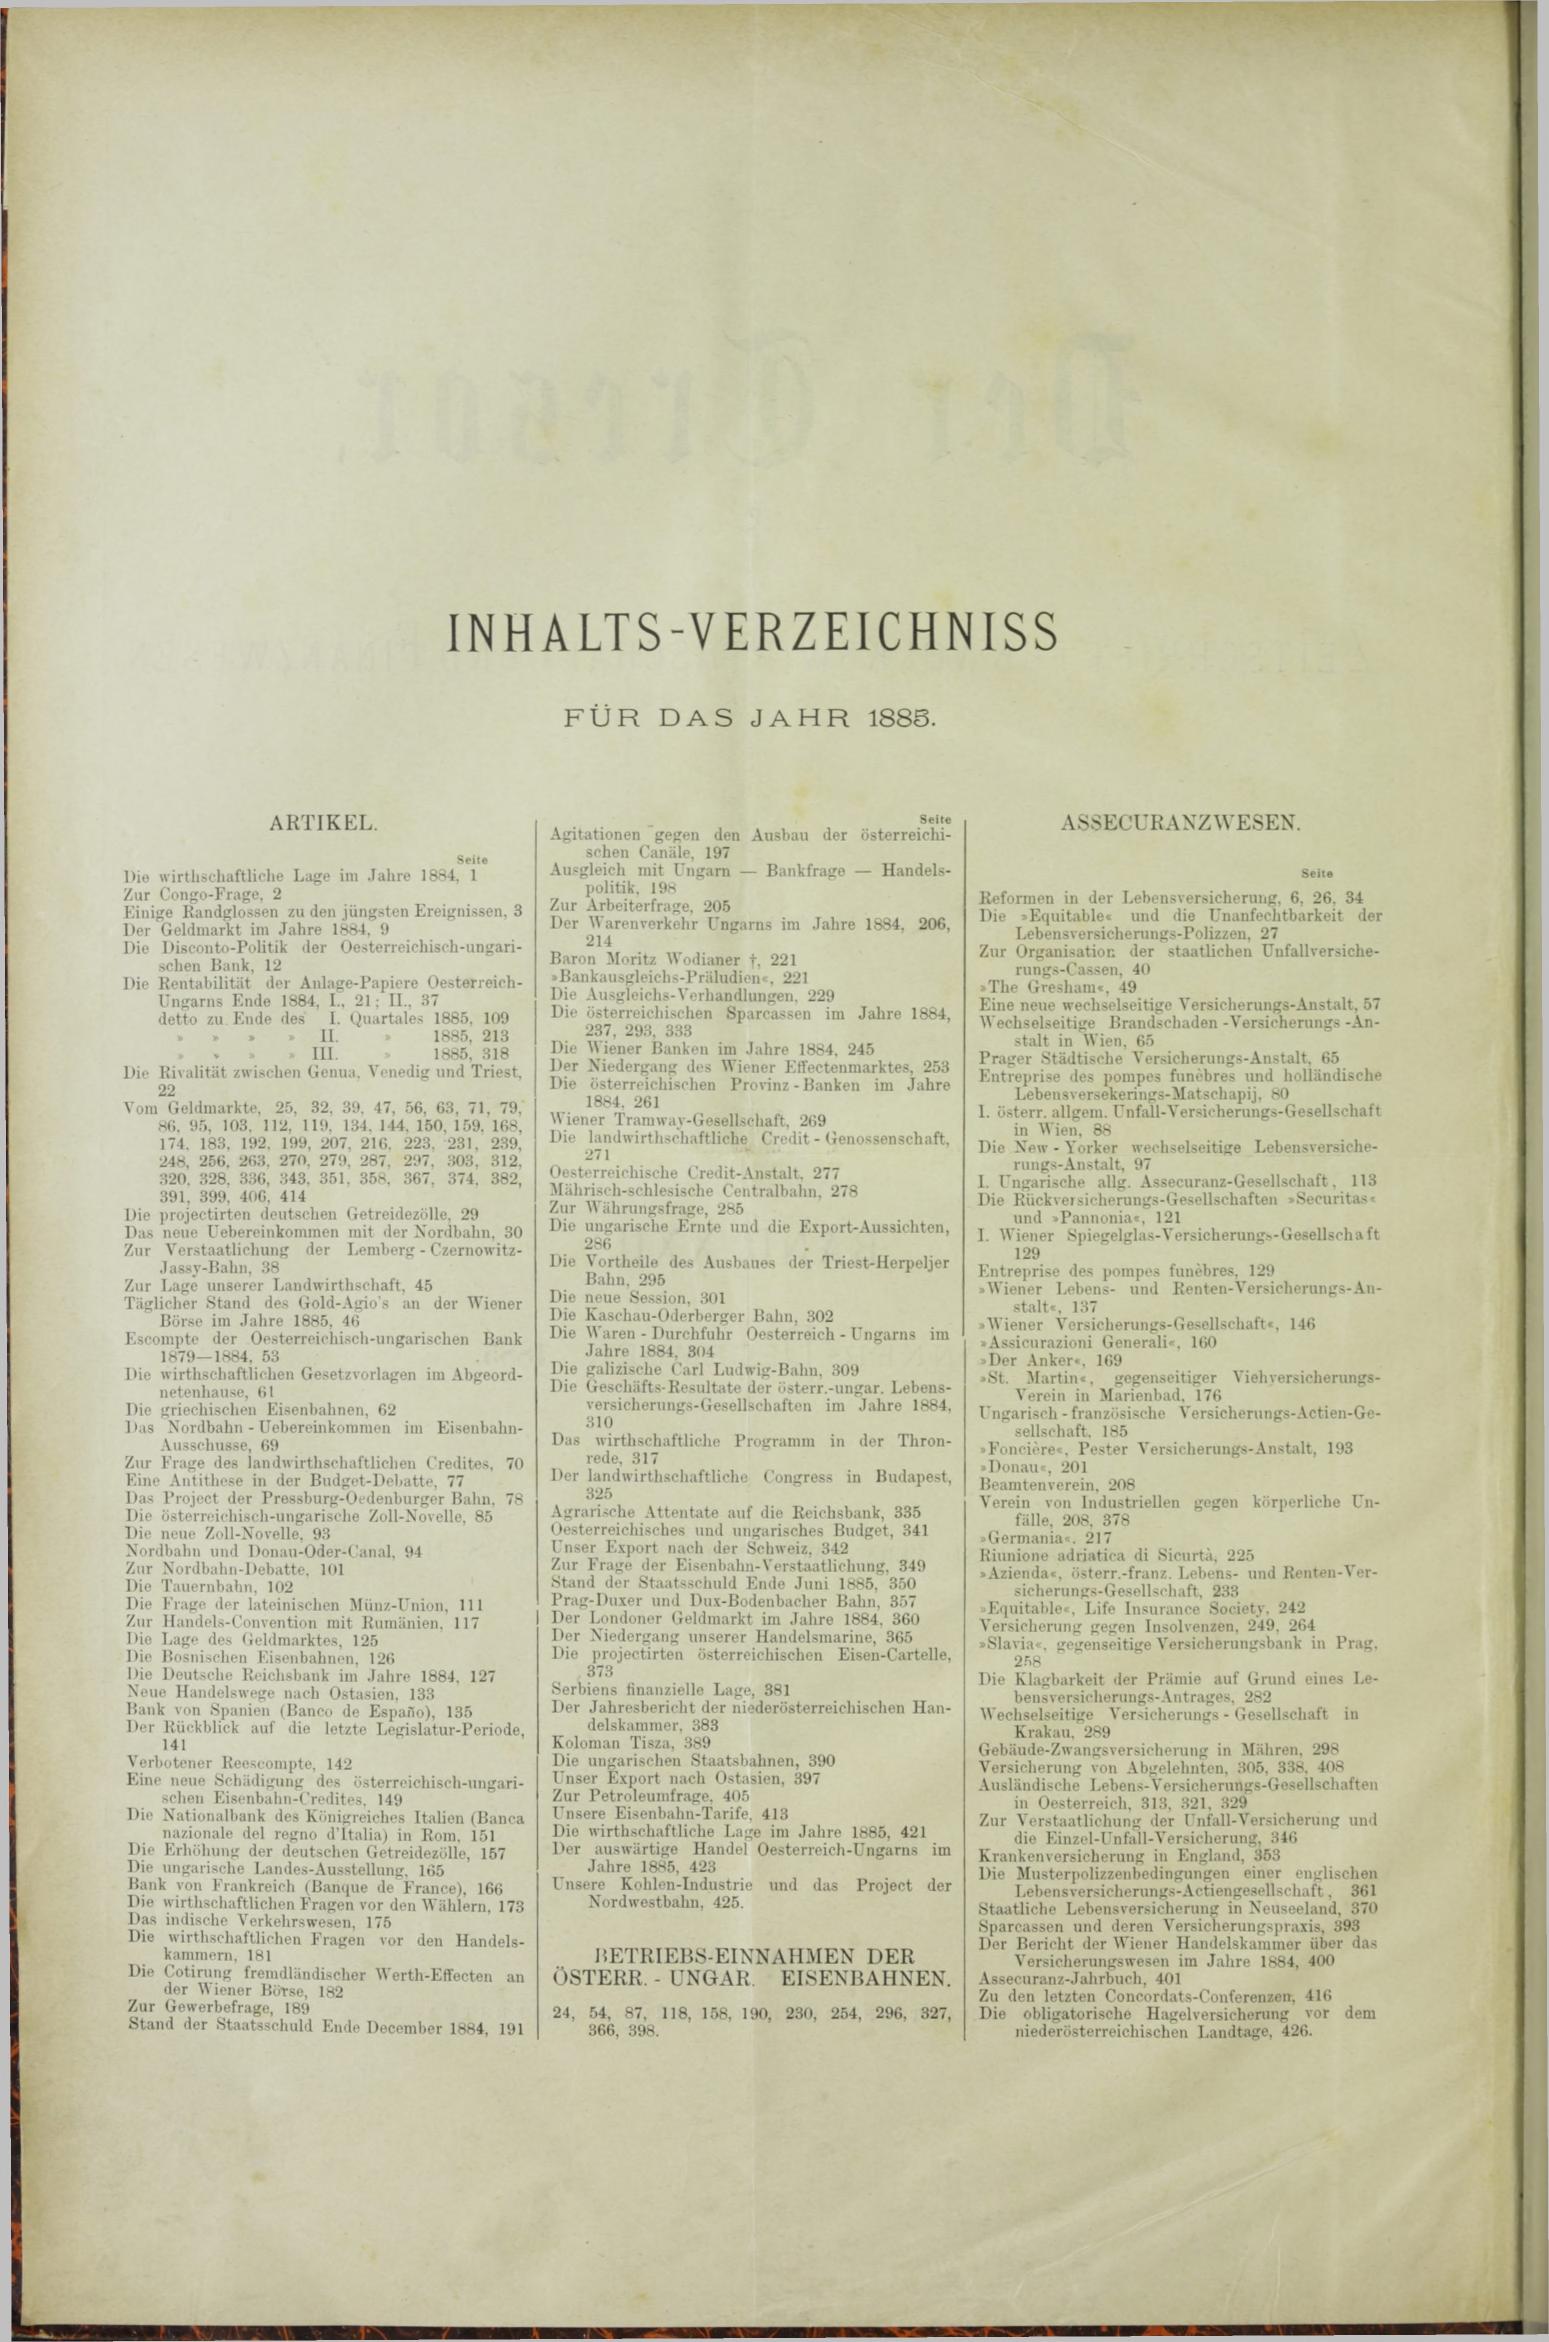 Der Tresor 05.03.1885 - Seite 10